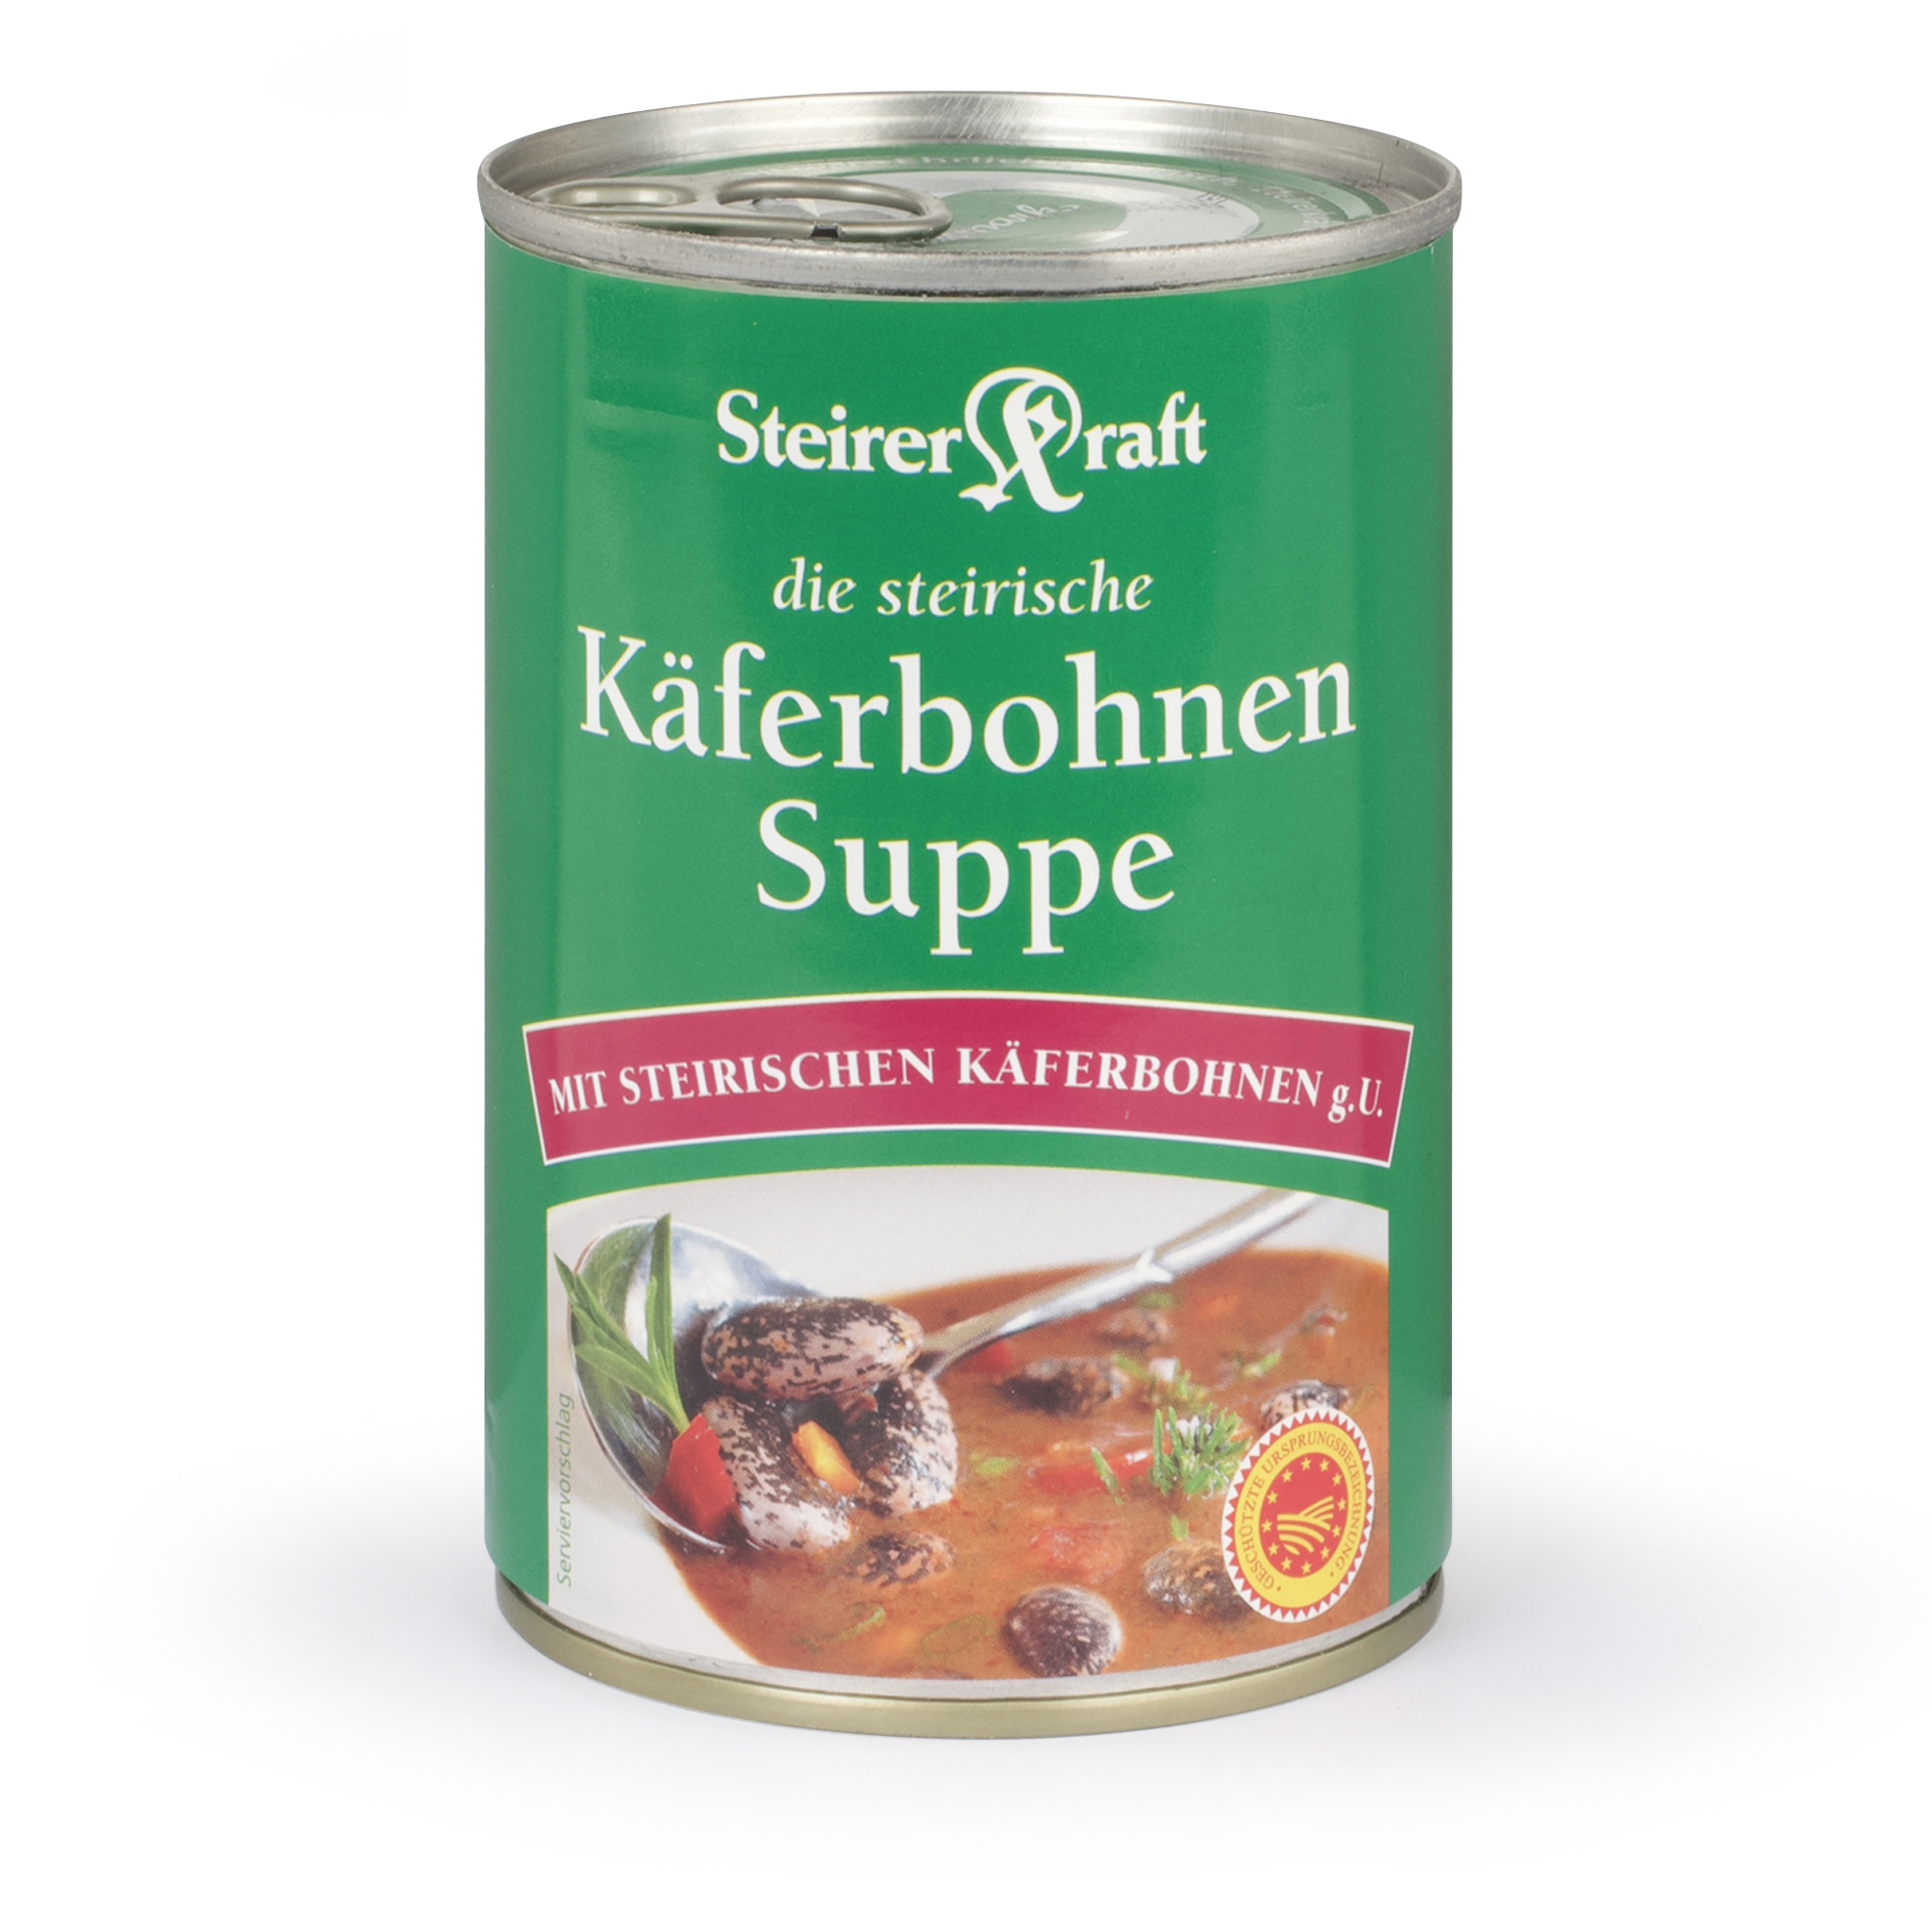 Die steirische Käferbohnen Suppe